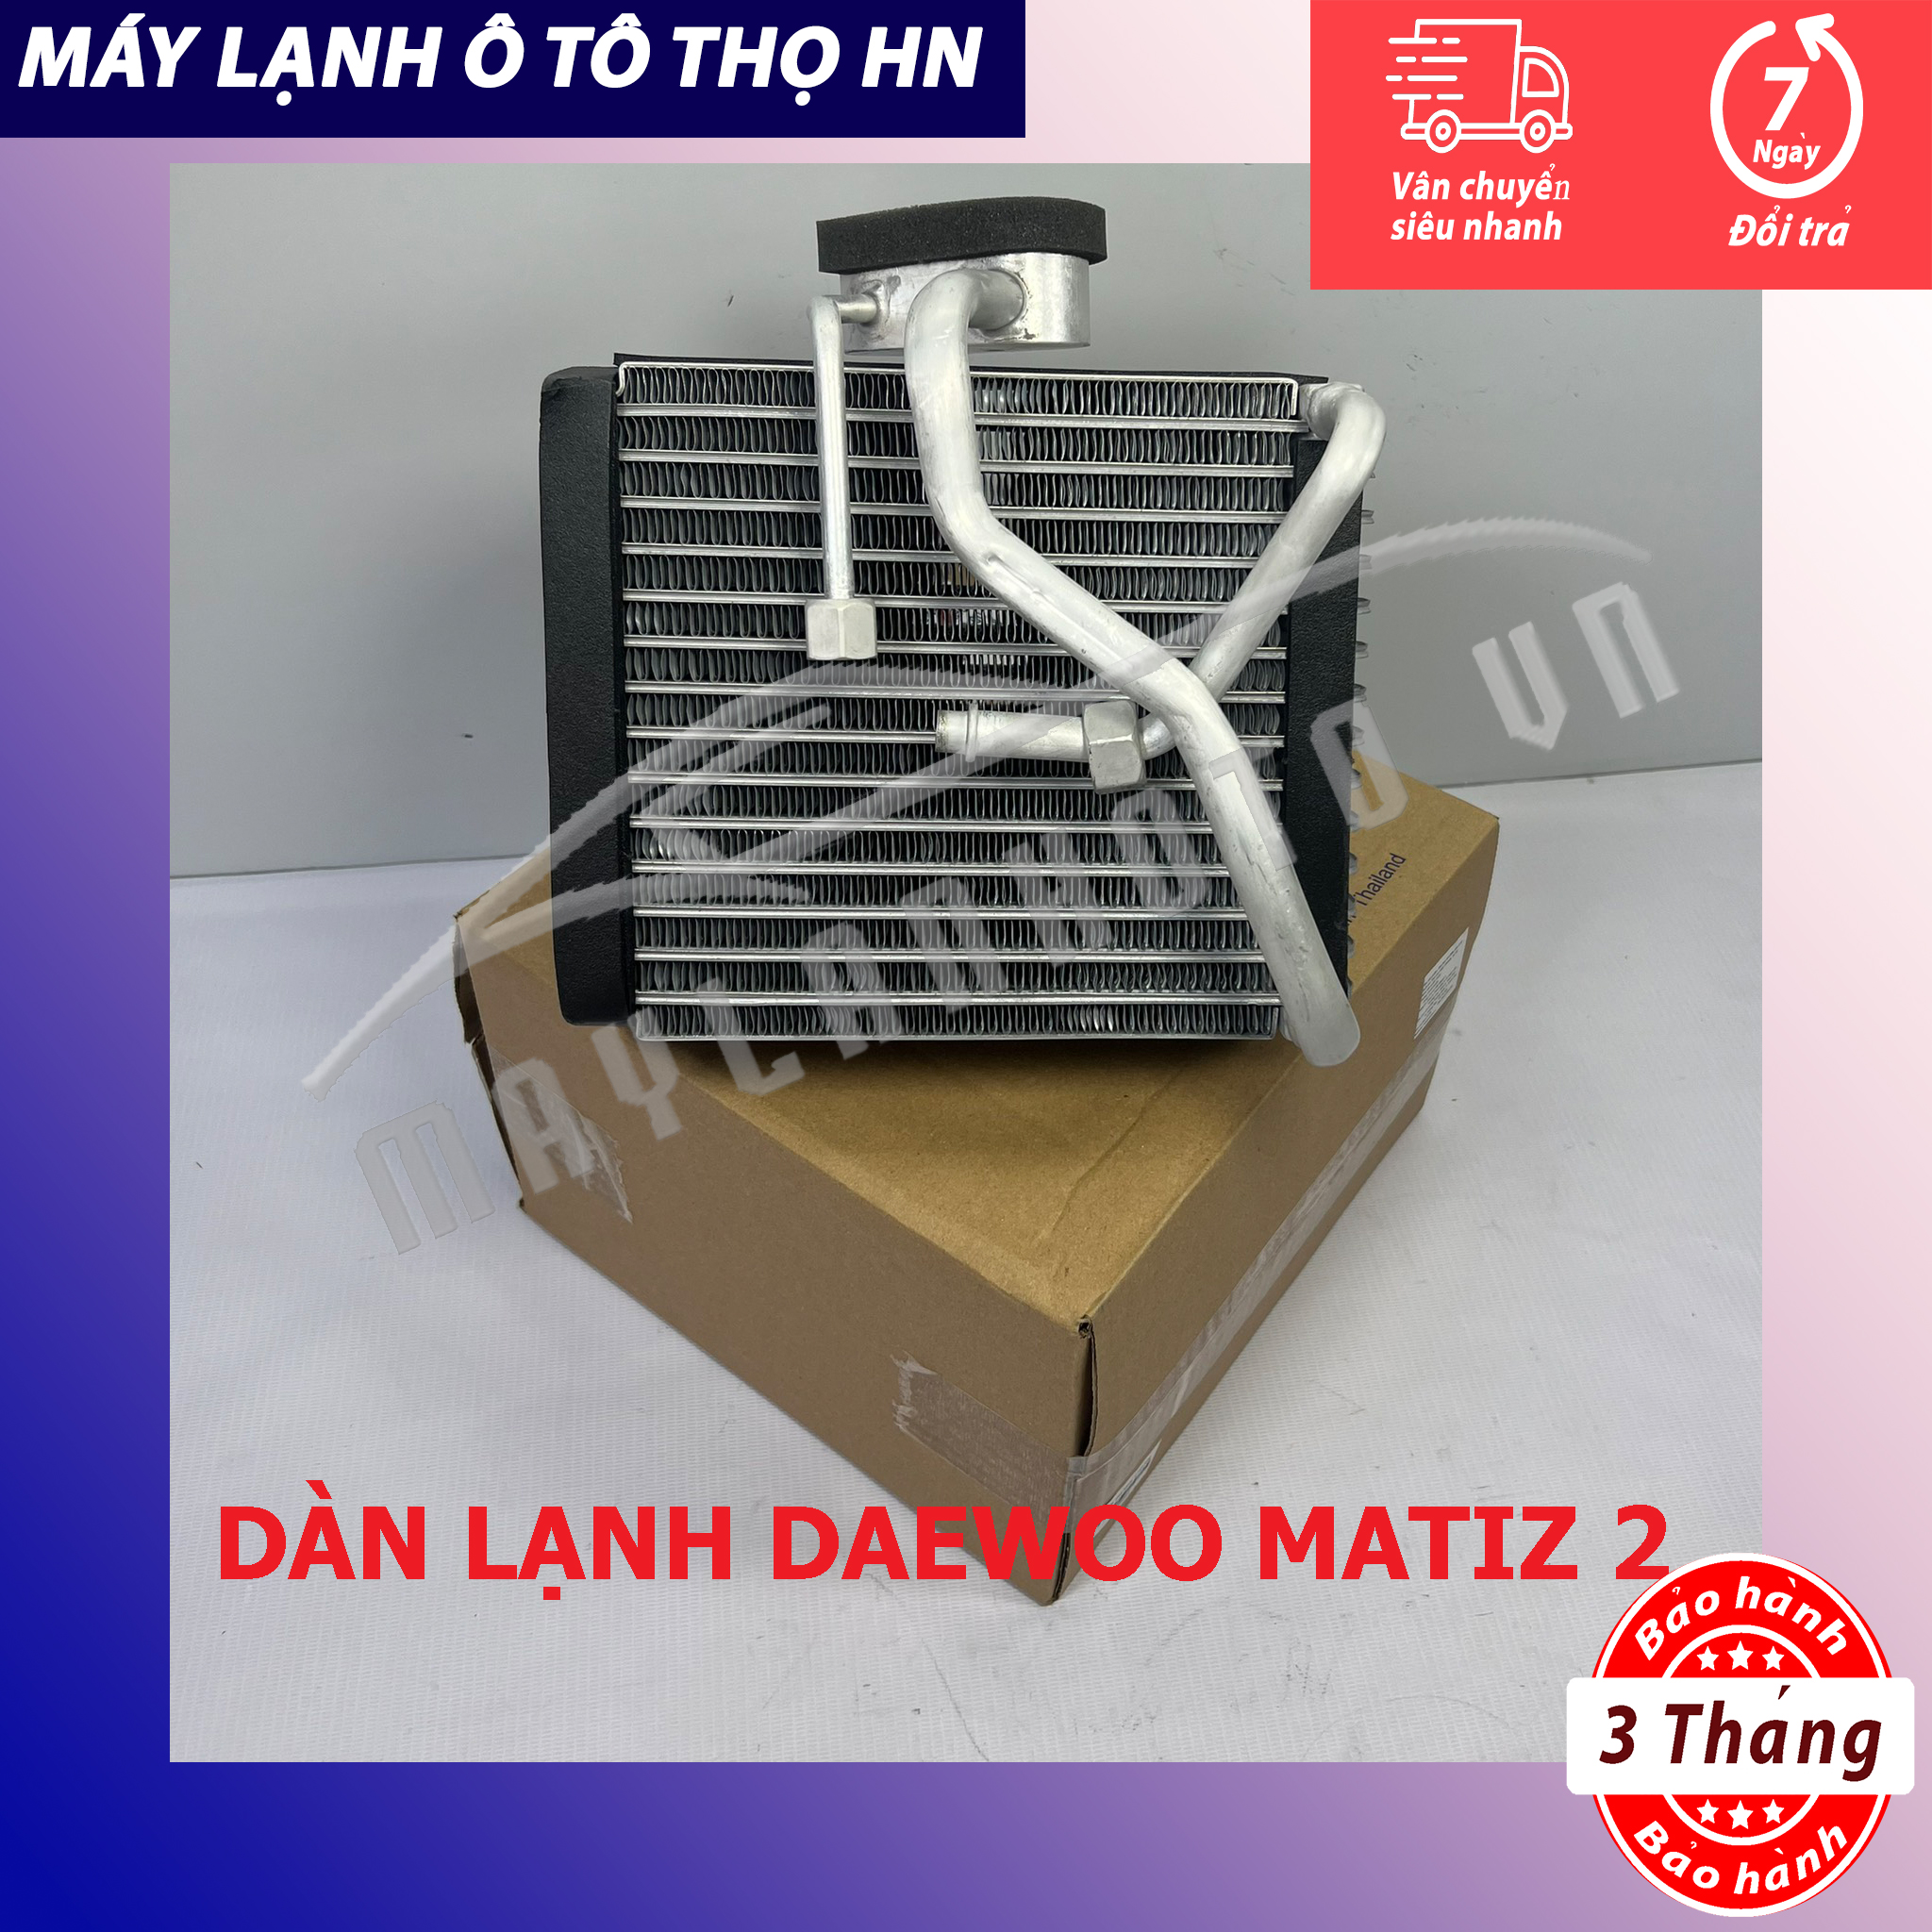 Dàn giàn lạnh Daewoo Matiz 2 Hàng xịn Thái Lan hàng chính hãng nhập khẩu